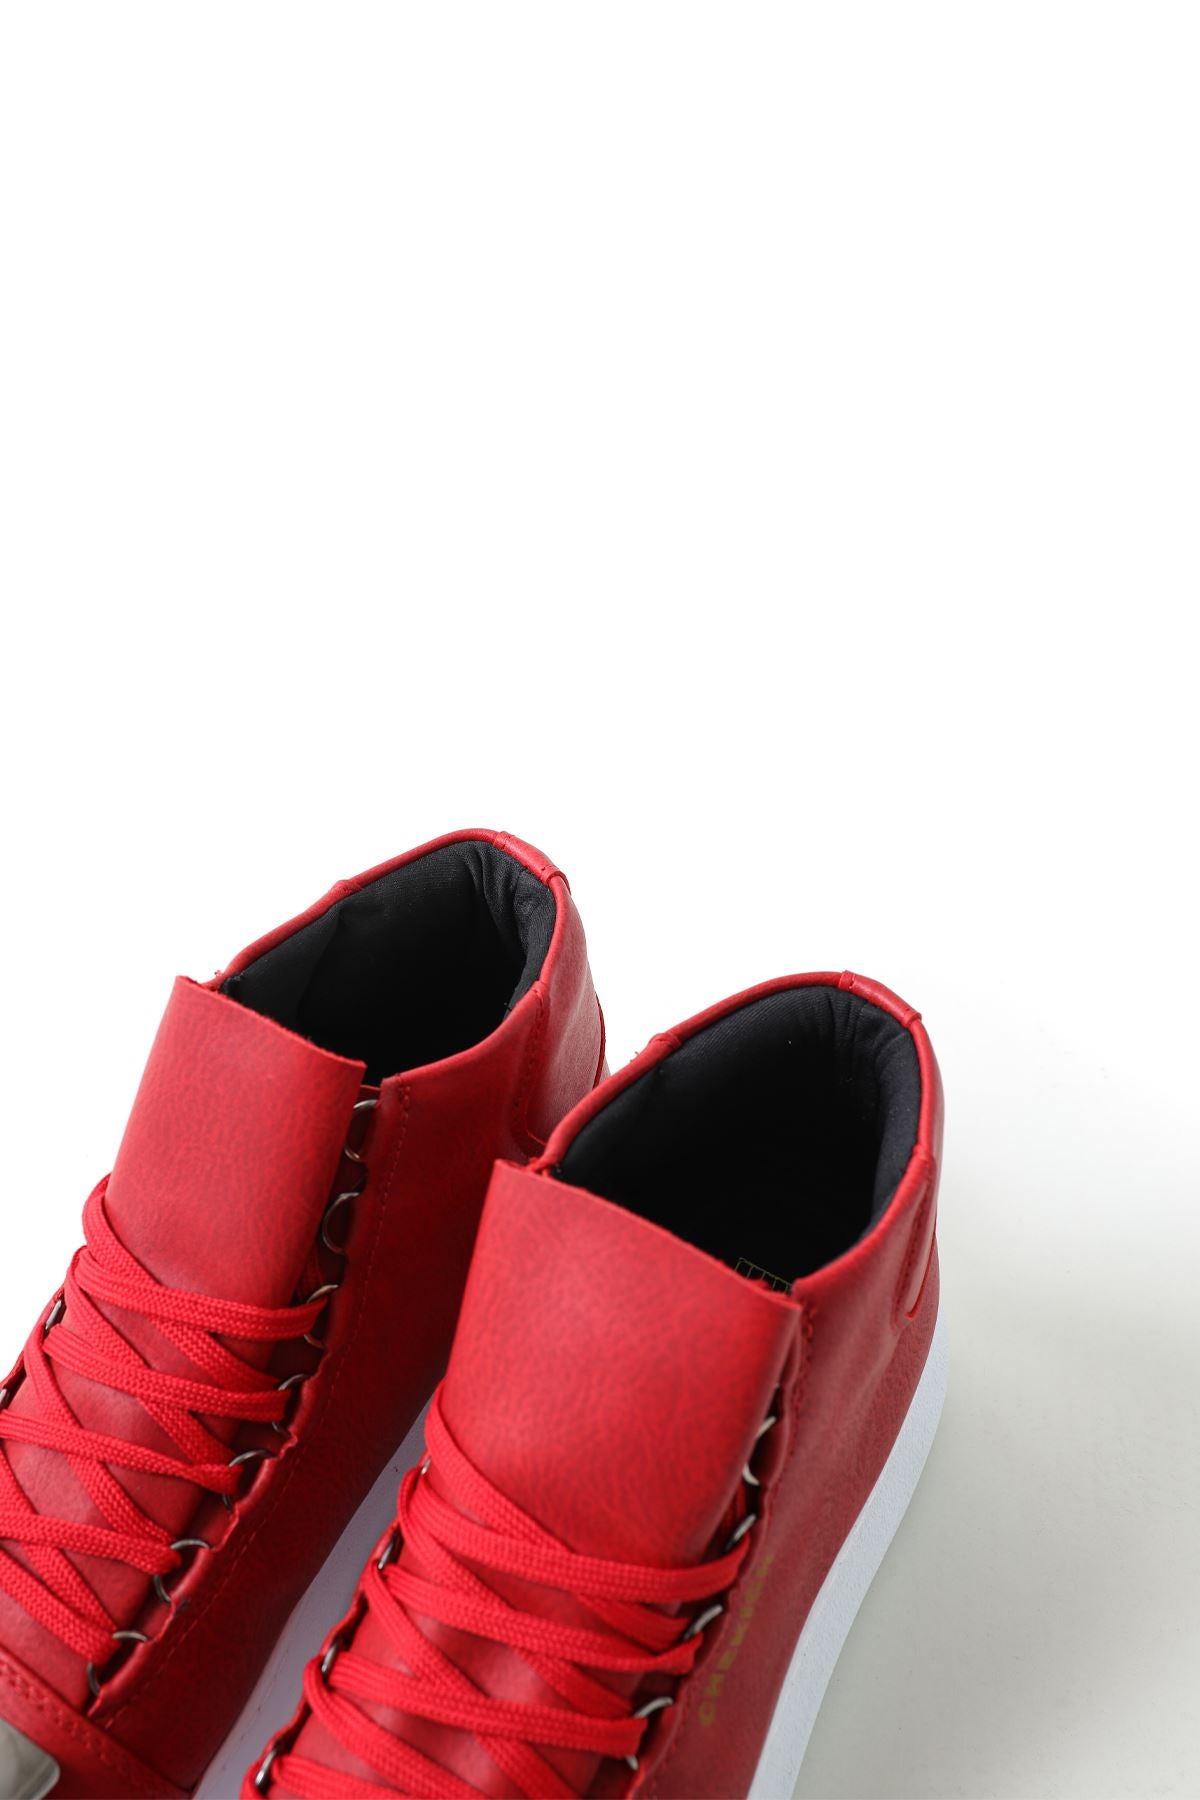 CH267 BT Men's Sneaker Boots - STREETMODE ™